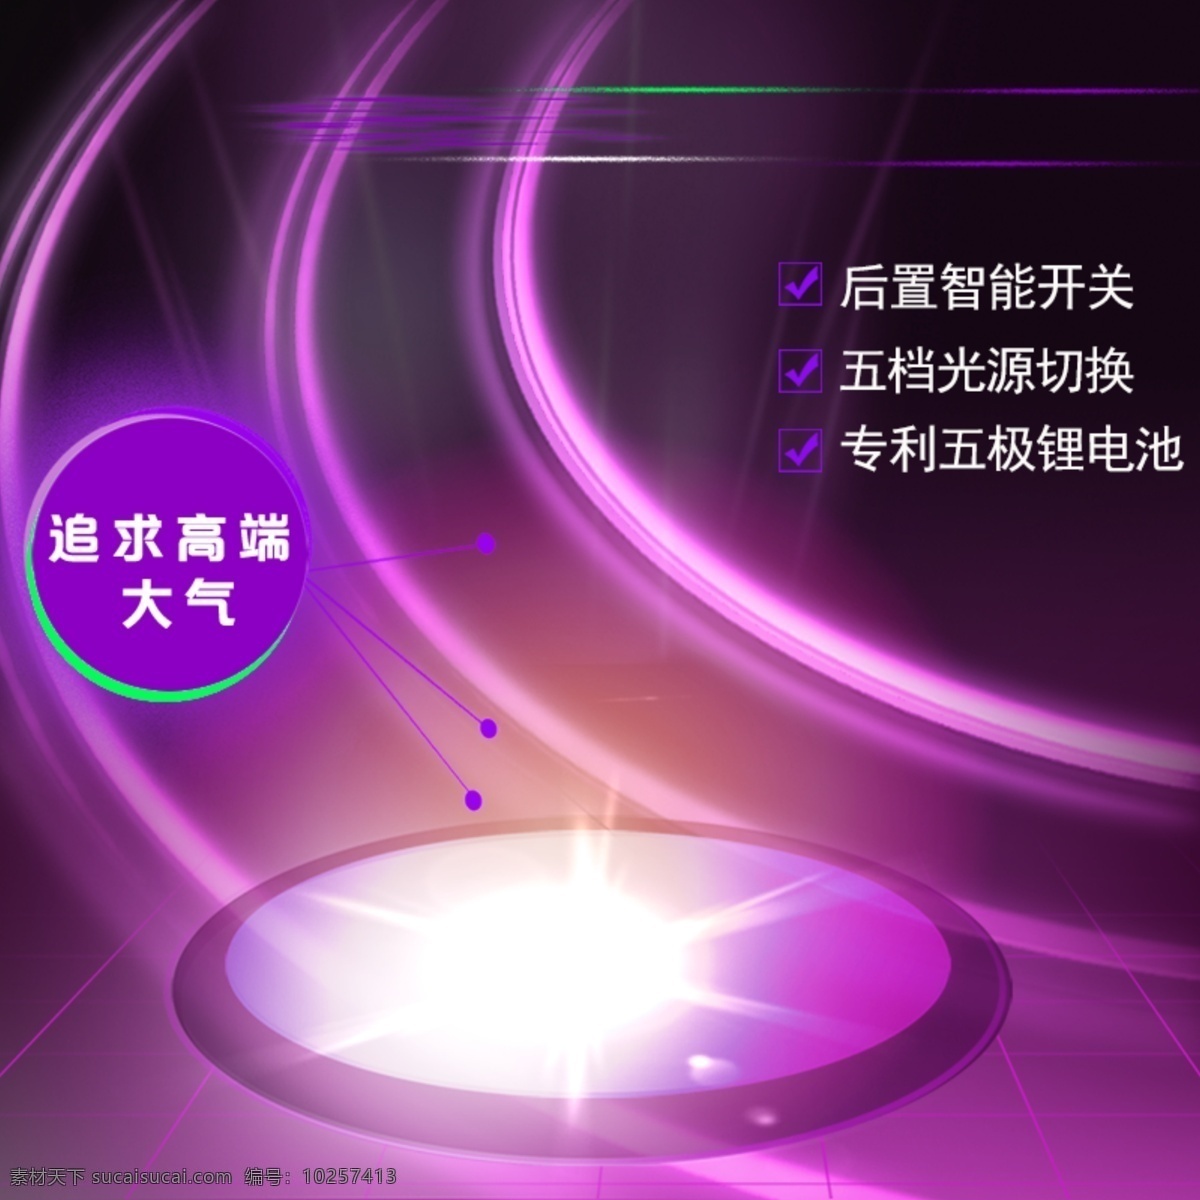 科技商务模板 科技 商务 促销 紫色 节日